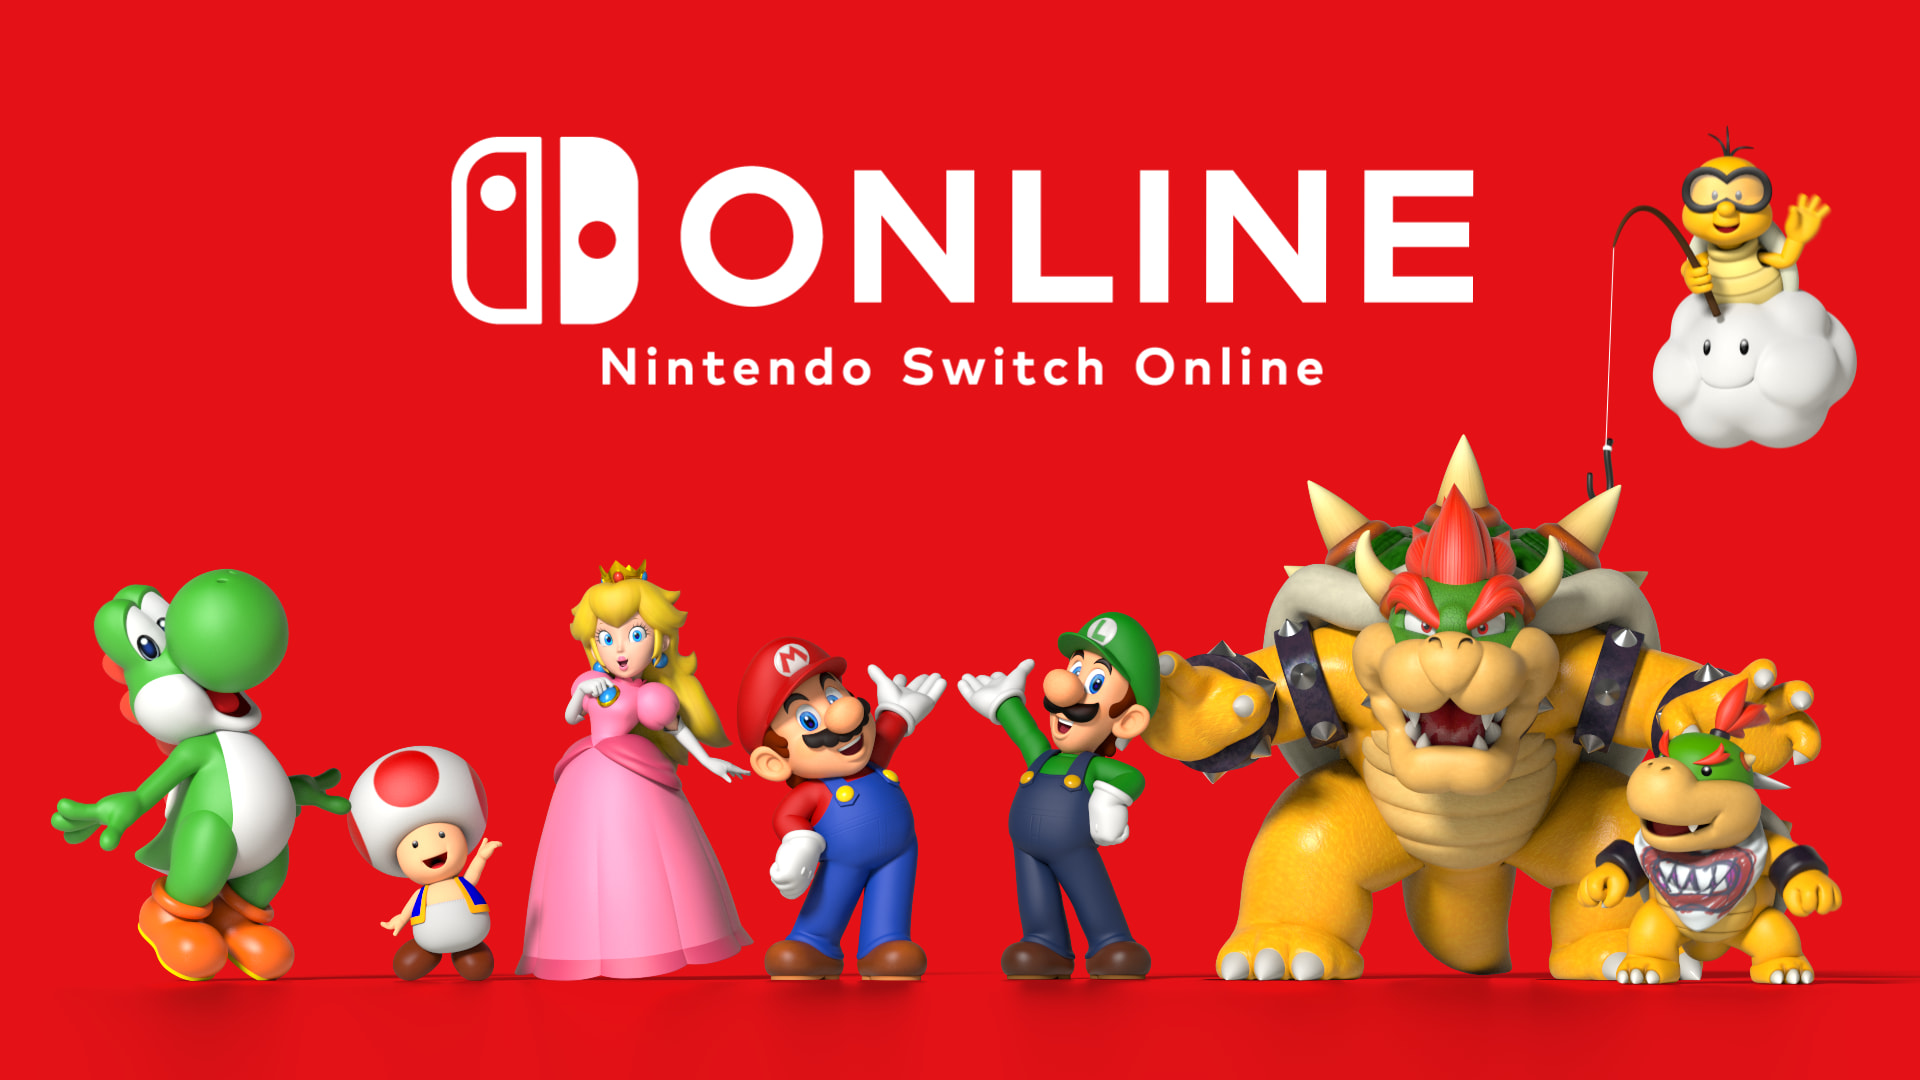 Nintendo Brasil confirma lançamento do bundle de Nintendo Switch com Mario  Kart 8 Deluxe e Nintendo Switch Online em 30 de setembro